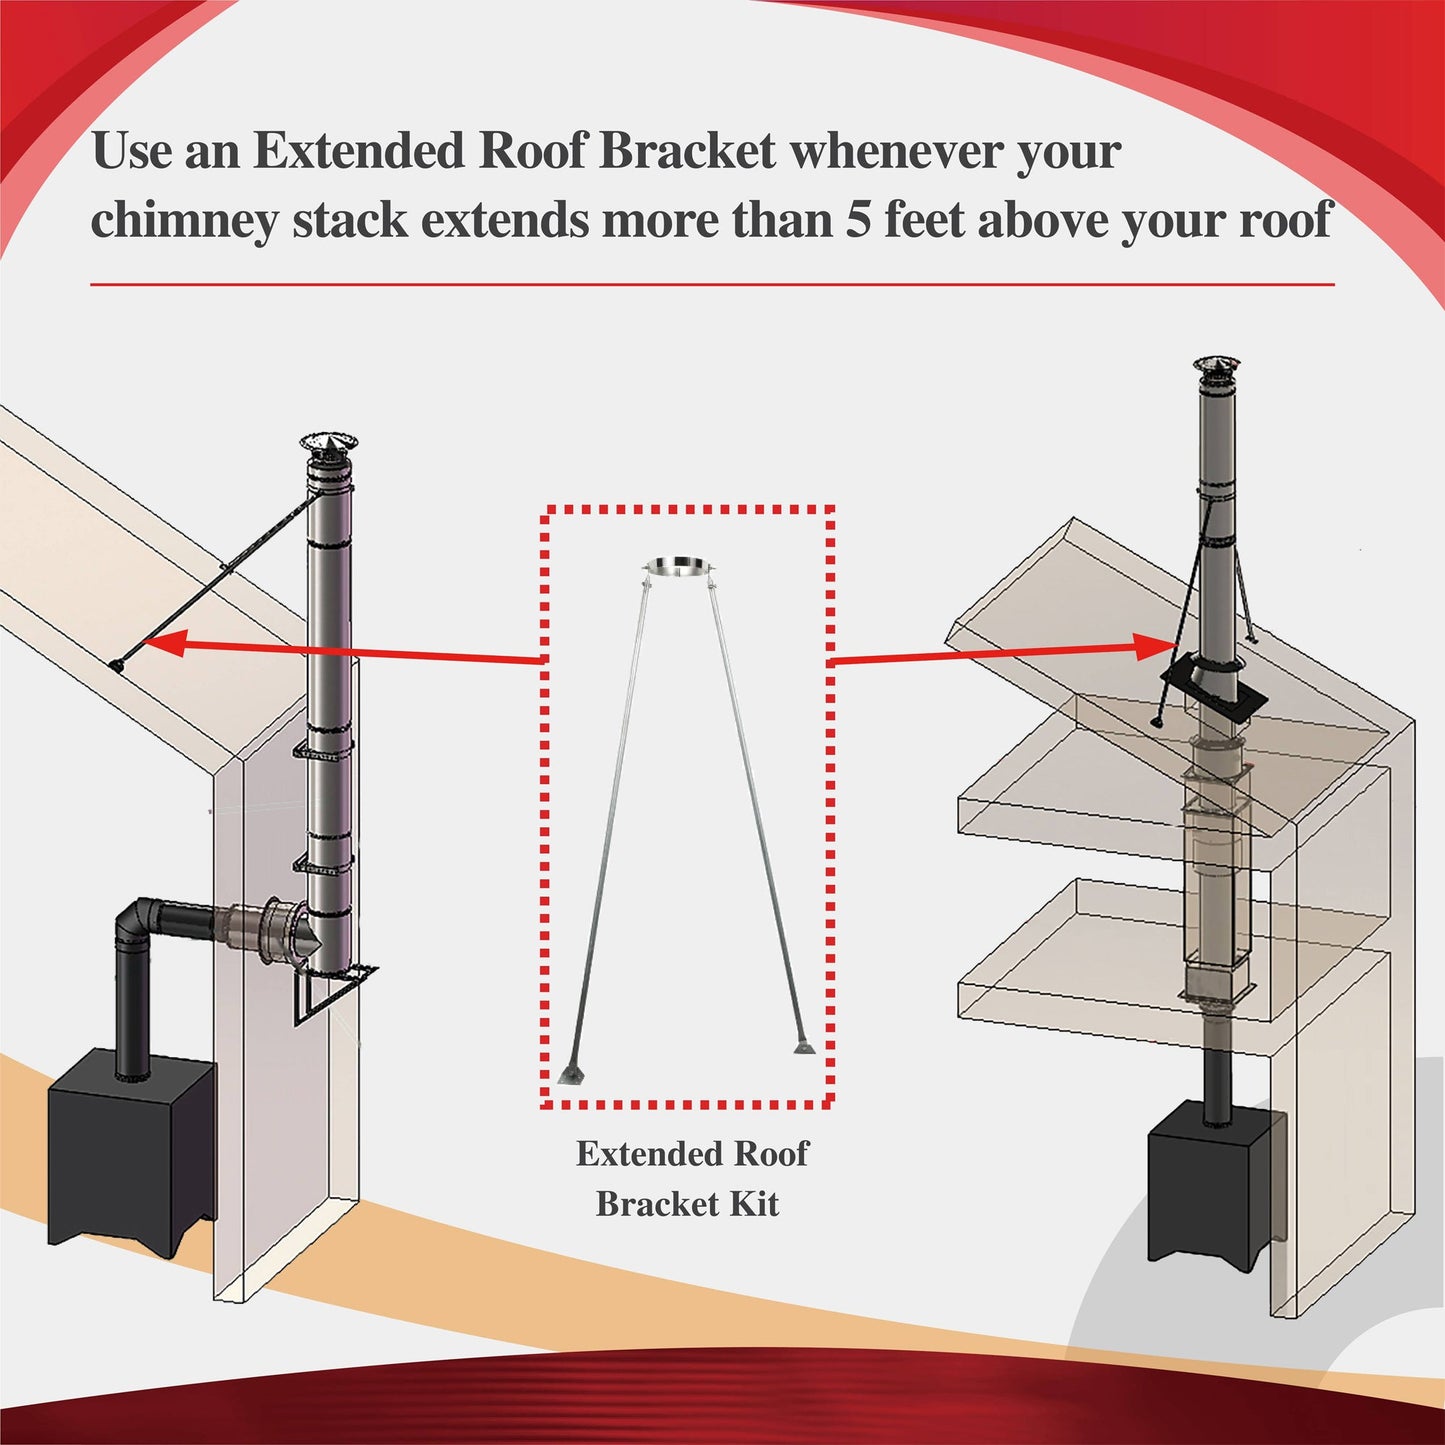 Extended Roof Brace for 8" Inner Diameter Chimney Pipe